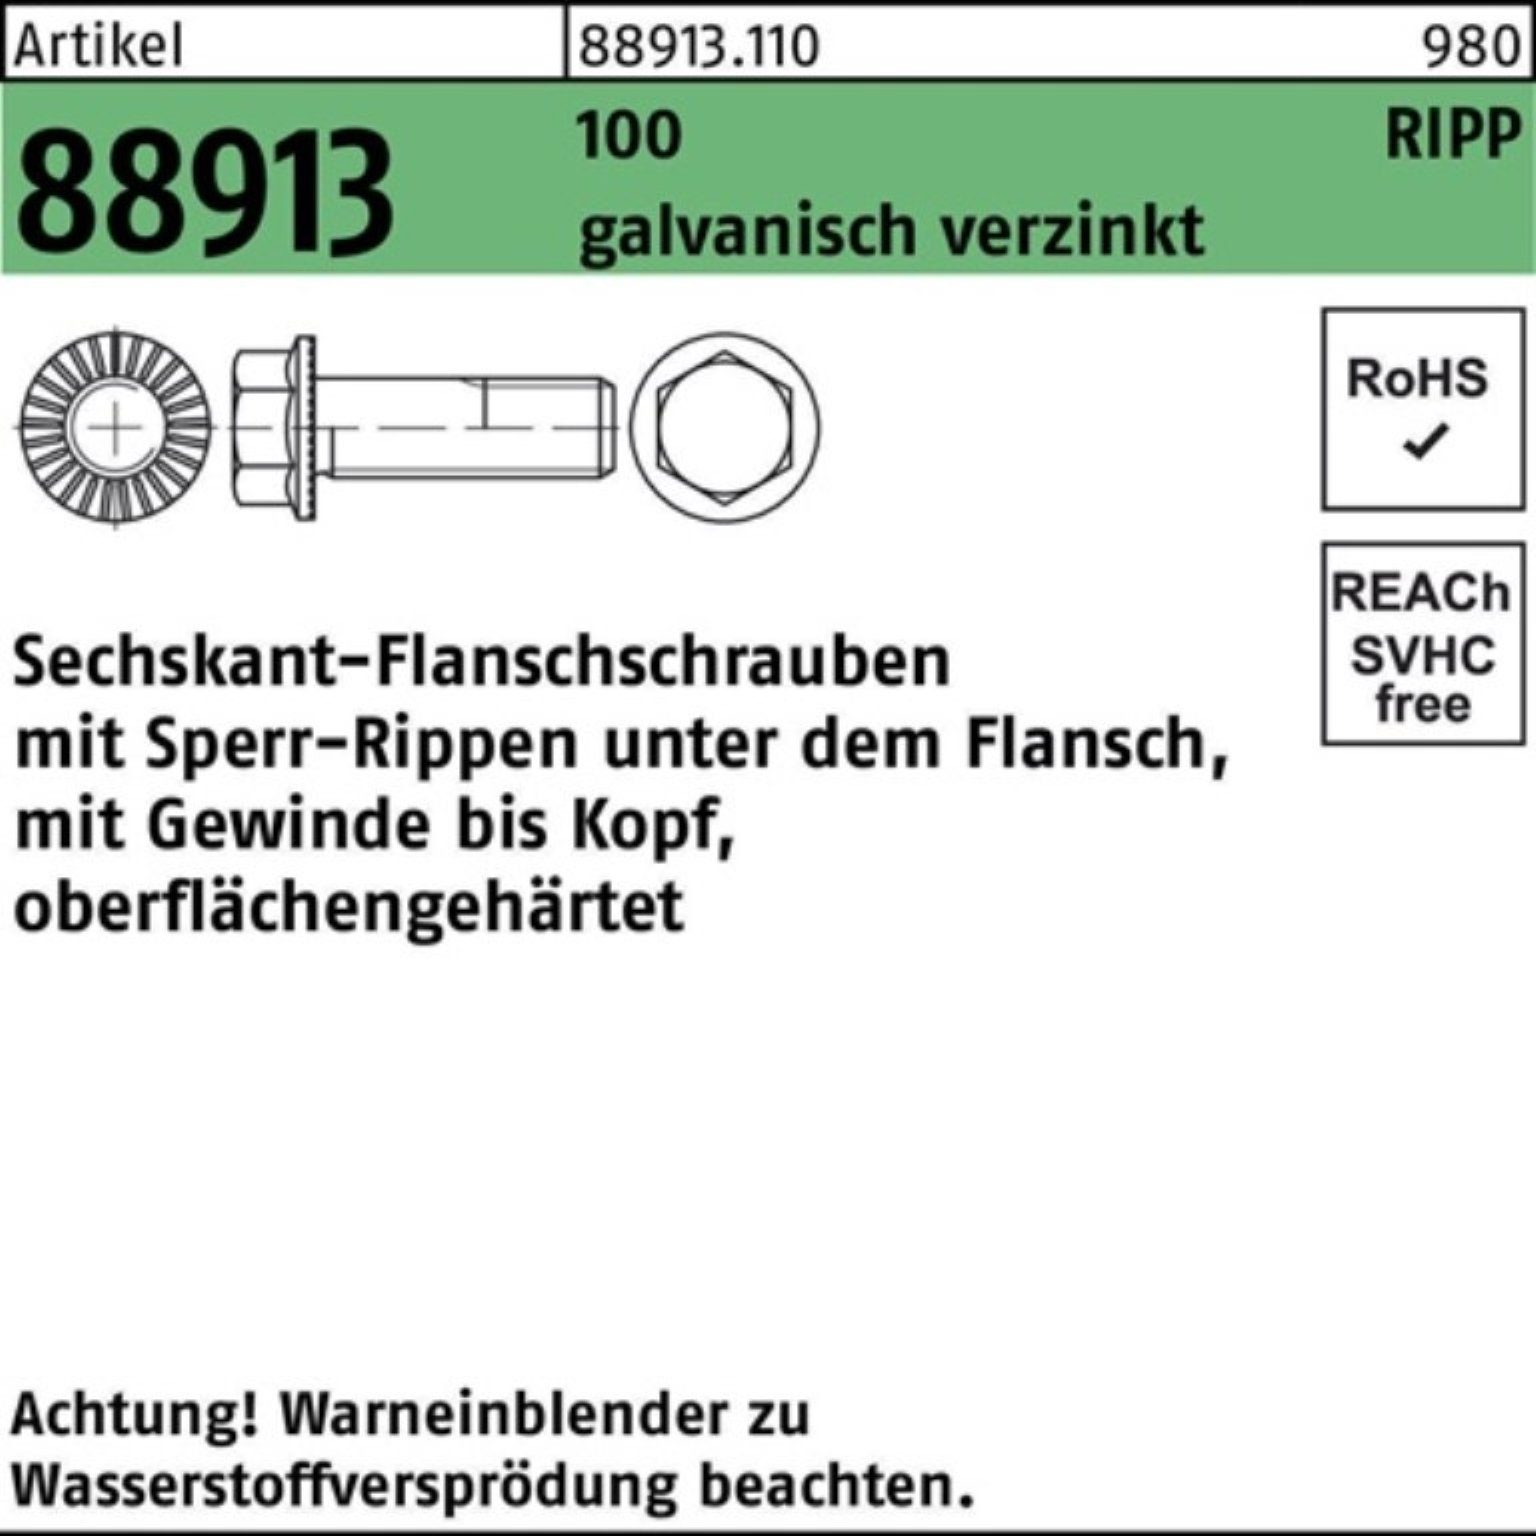 88913 Sperr-Ripp R 100 100er M16x60 Sechskantflanschschraube Pack Reyher Schraube VG g